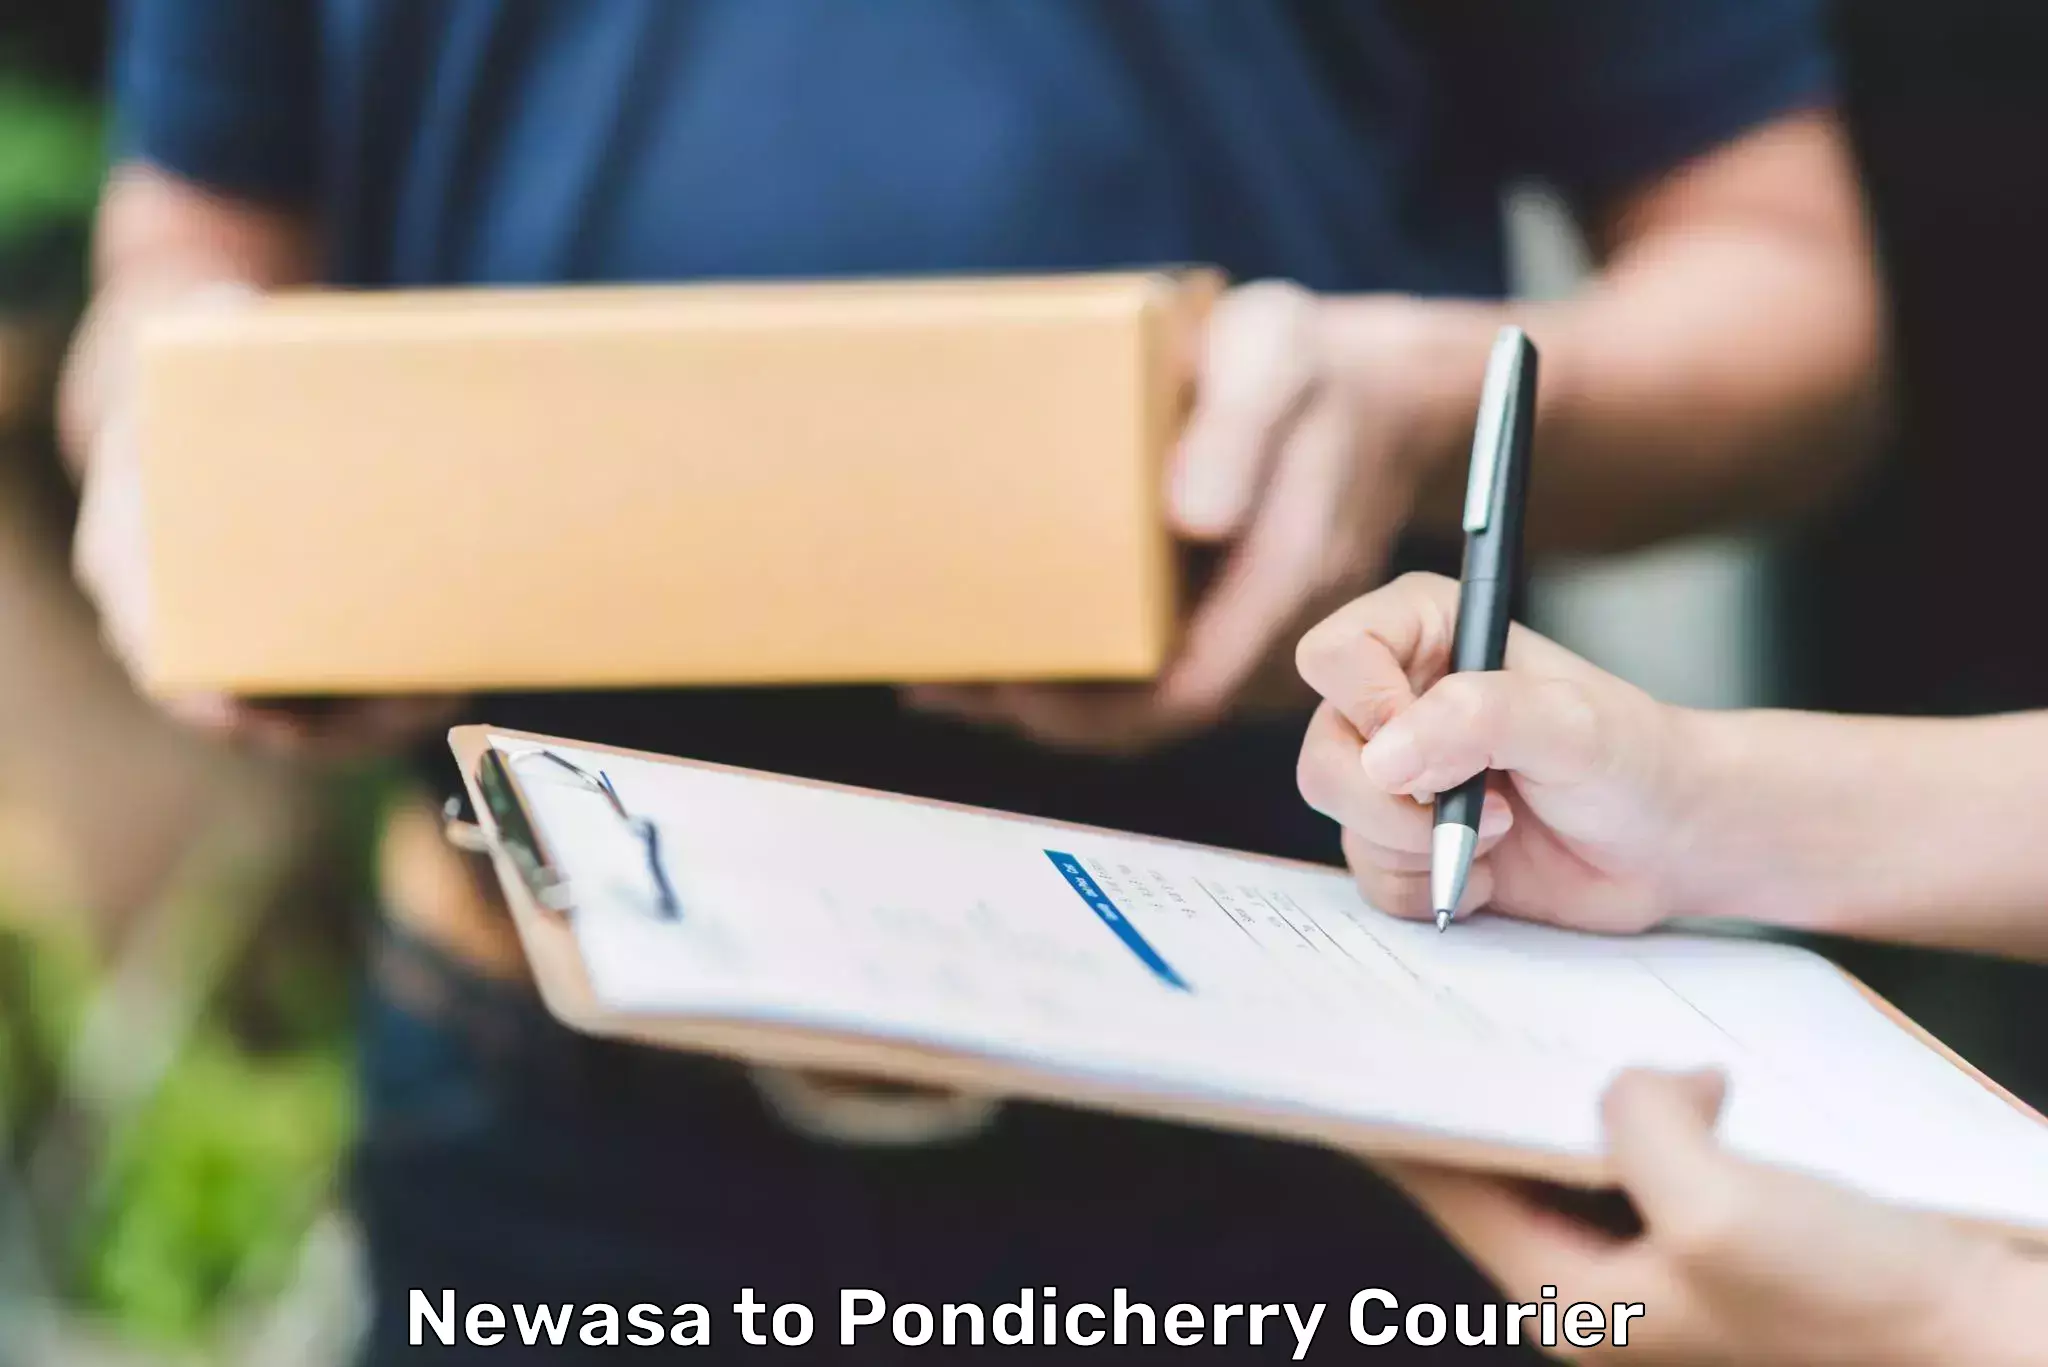 Pharmaceutical courier Newasa to Pondicherry University